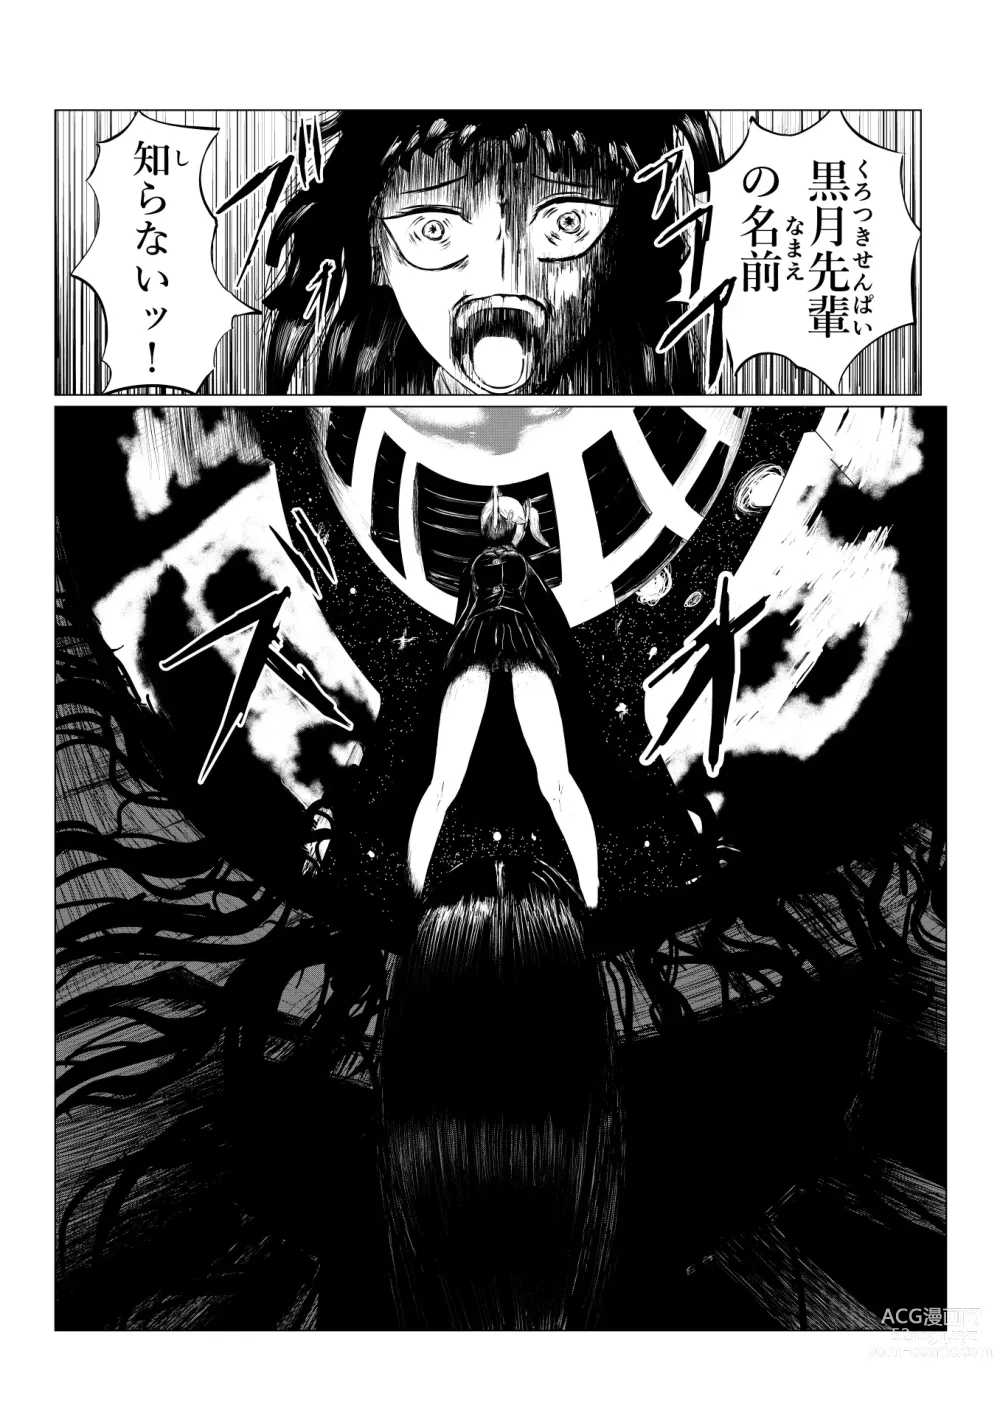 Page 210 of doujinshi HYPE-C Kutourufu Shinwa Musou Roku